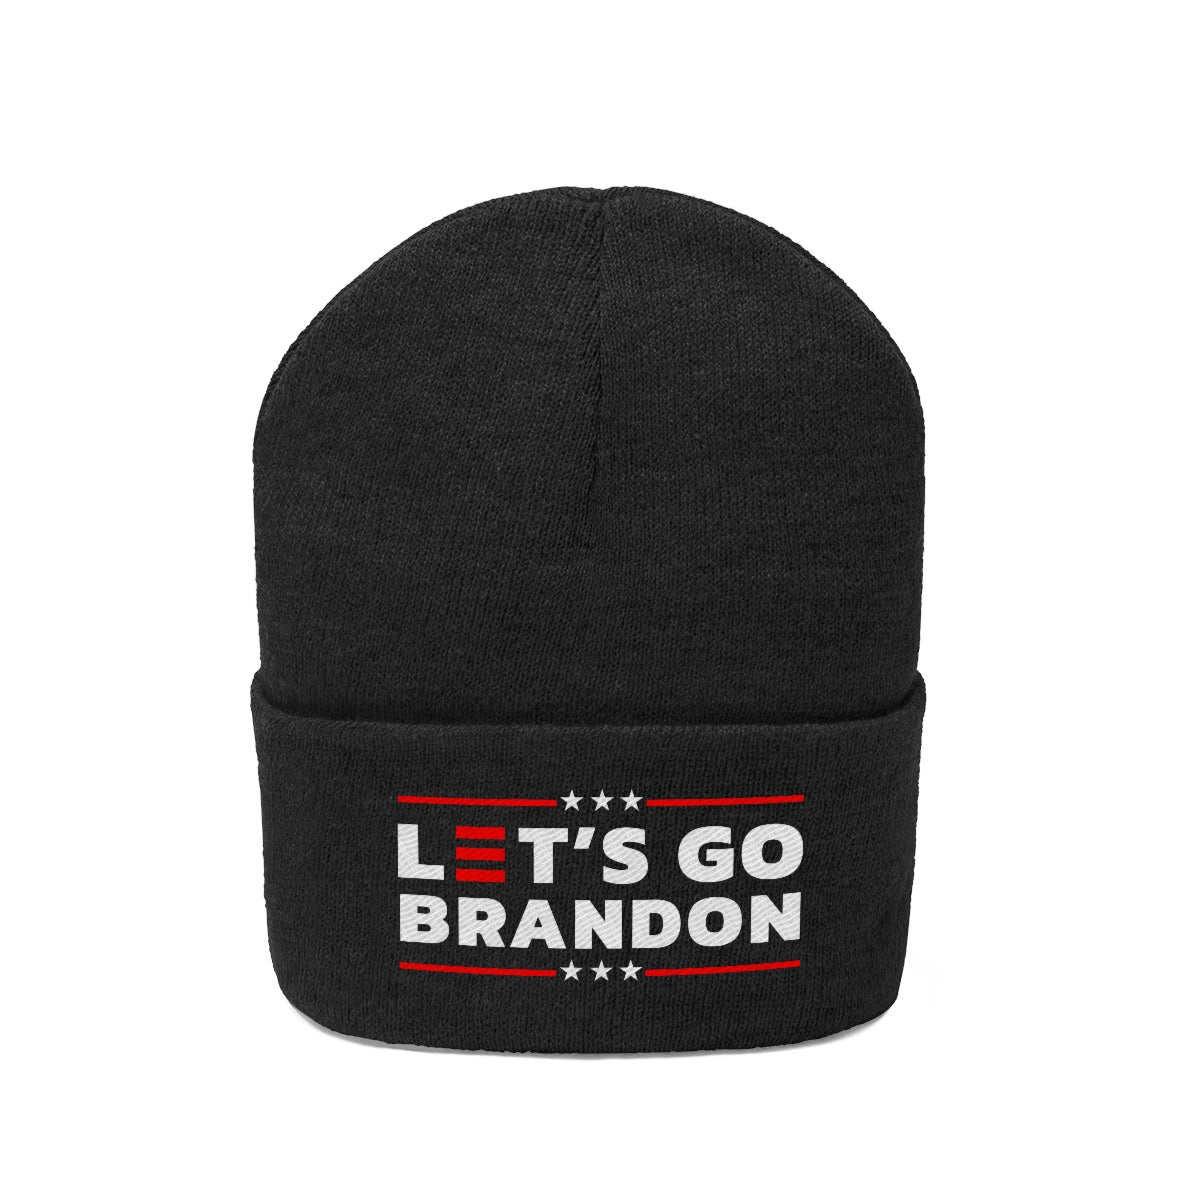 Let's Go Brandon Black Beanie Hat - Rise of The New Media